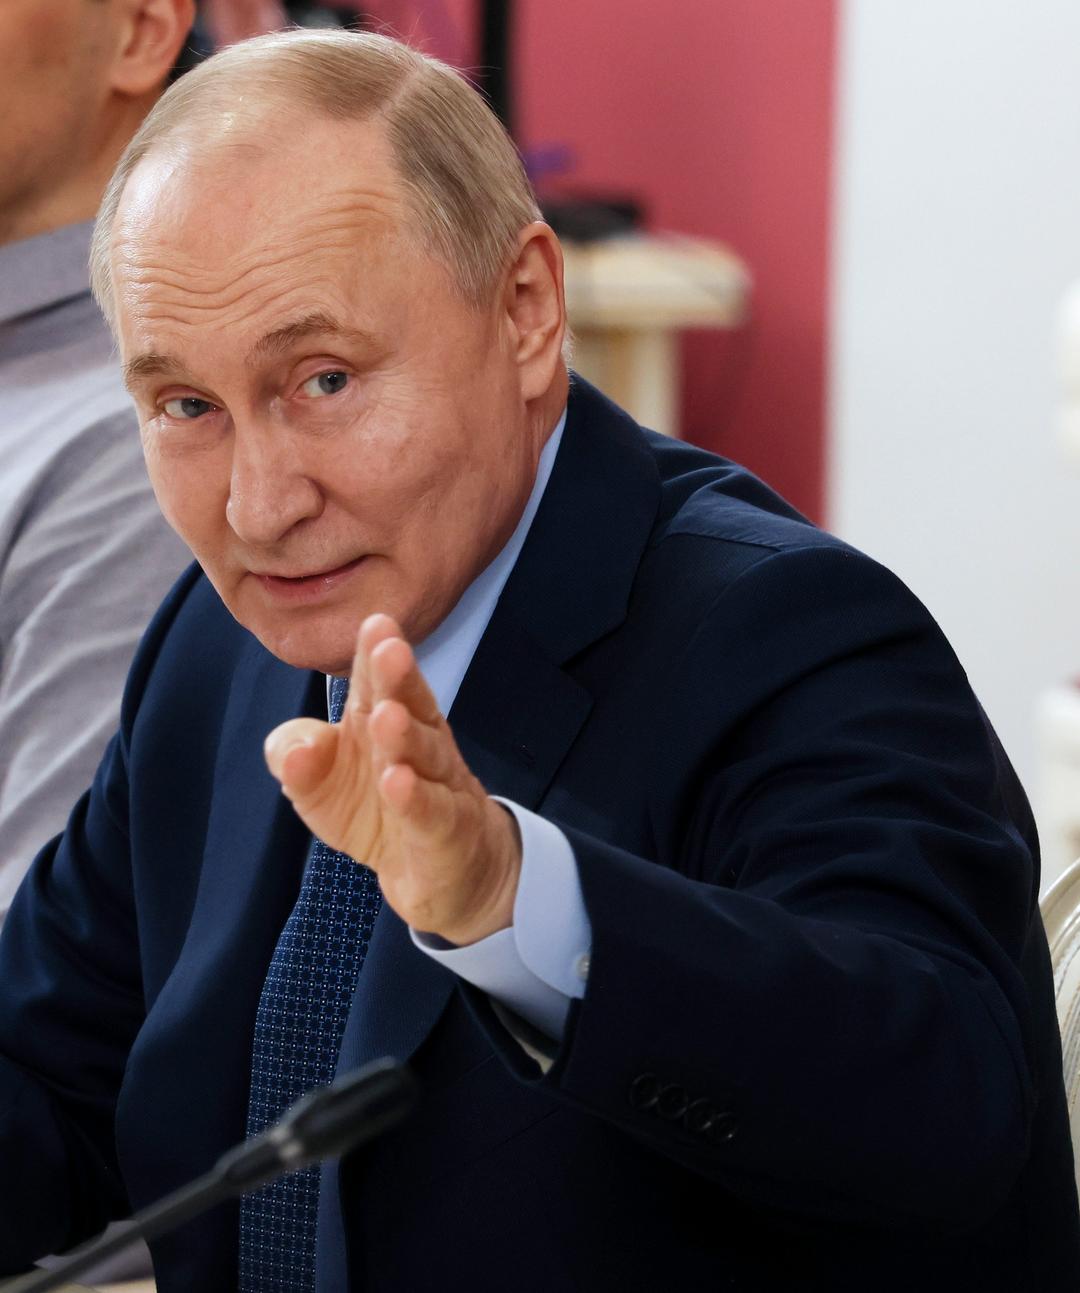 – Putin e il Cremlino stanno combattendo